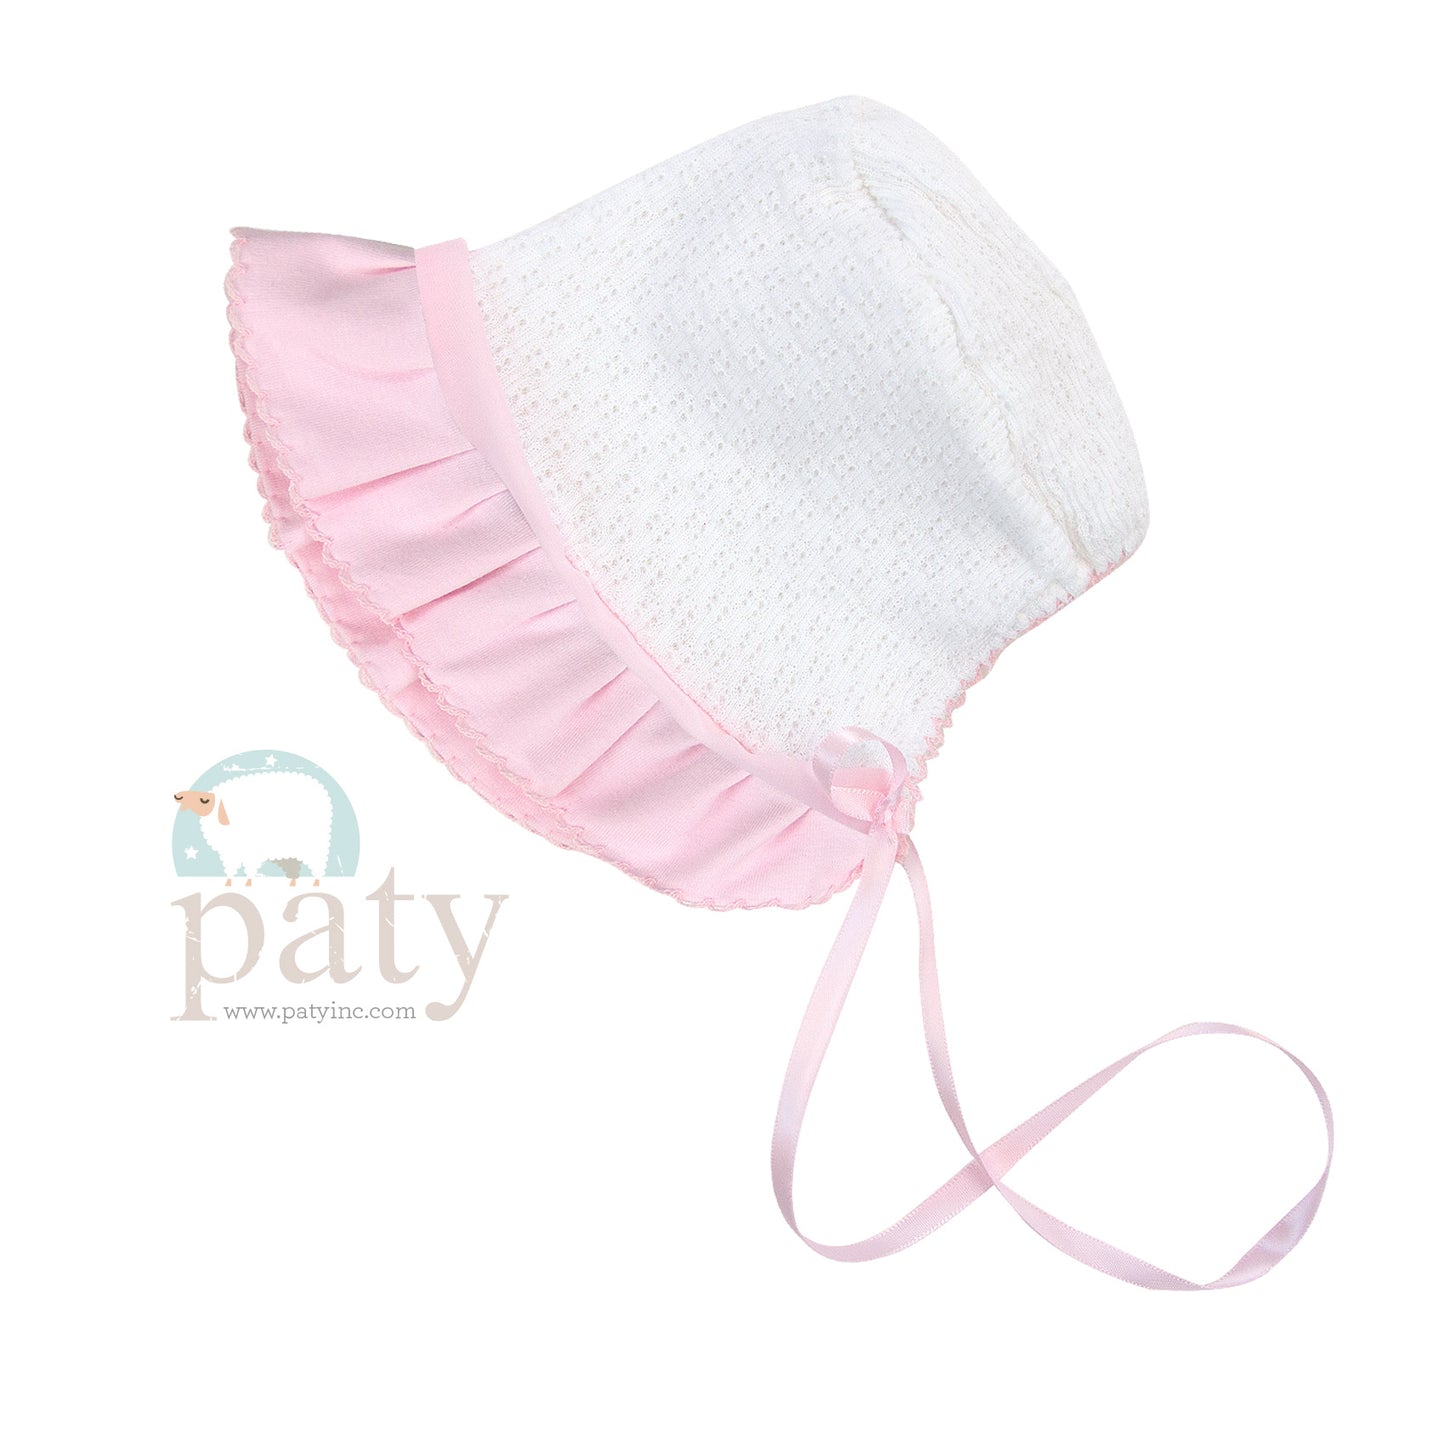 White Paty Knit Bonnet w/ Pink Cotton & Chiffon Trim